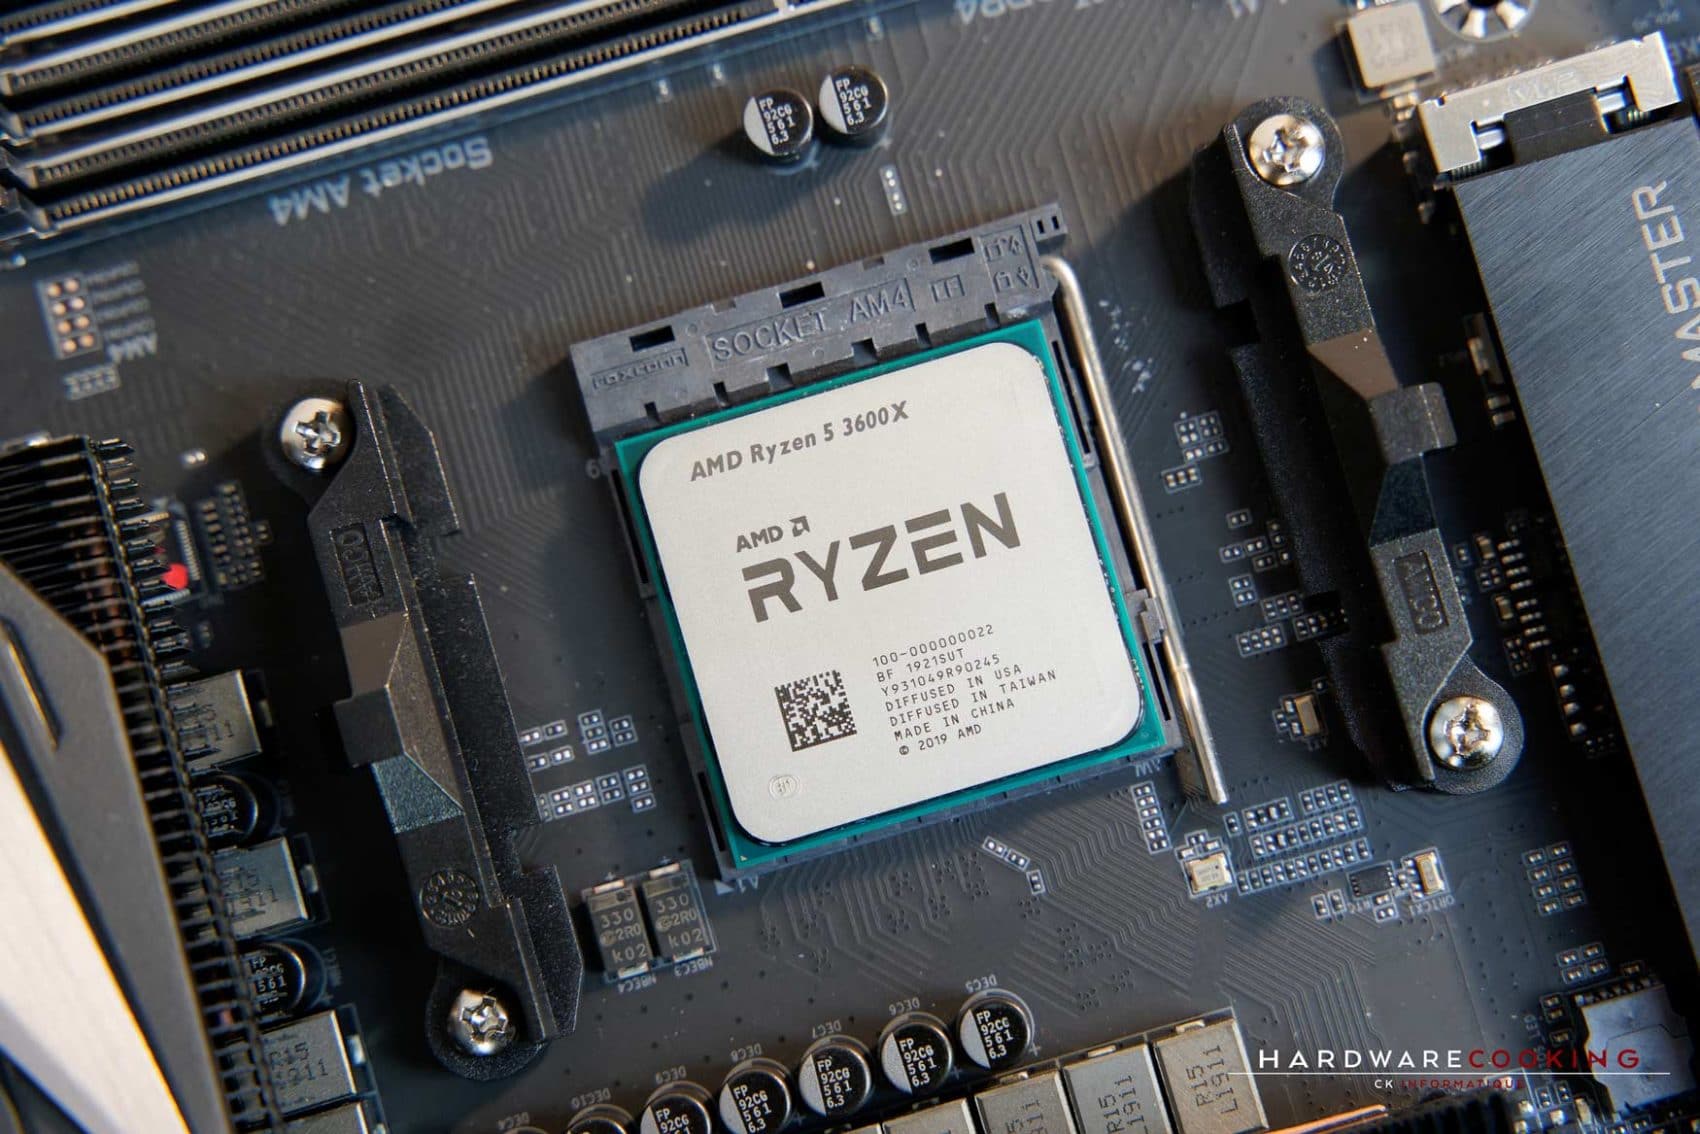 5 3600 сокет. Ryzen 5 3600x. AMD r5 3600. AMD Ryazan 5 3600. Процессор AMD Ryzen 5 3600 am4.